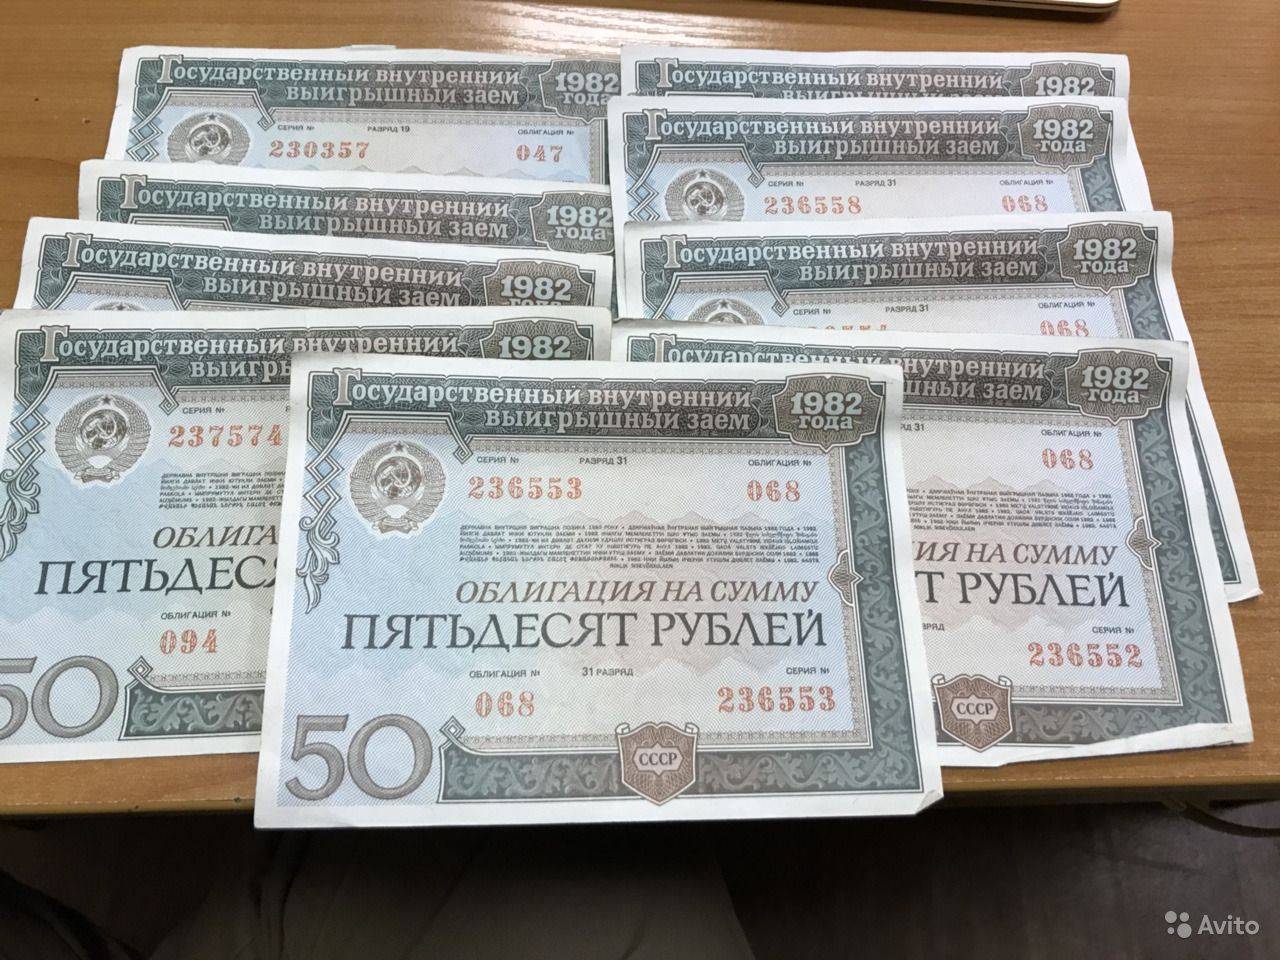 Заем 1982 года. Облигации. Облигации 1982 года. ОФЗ. Современные российские ценные бумаги.